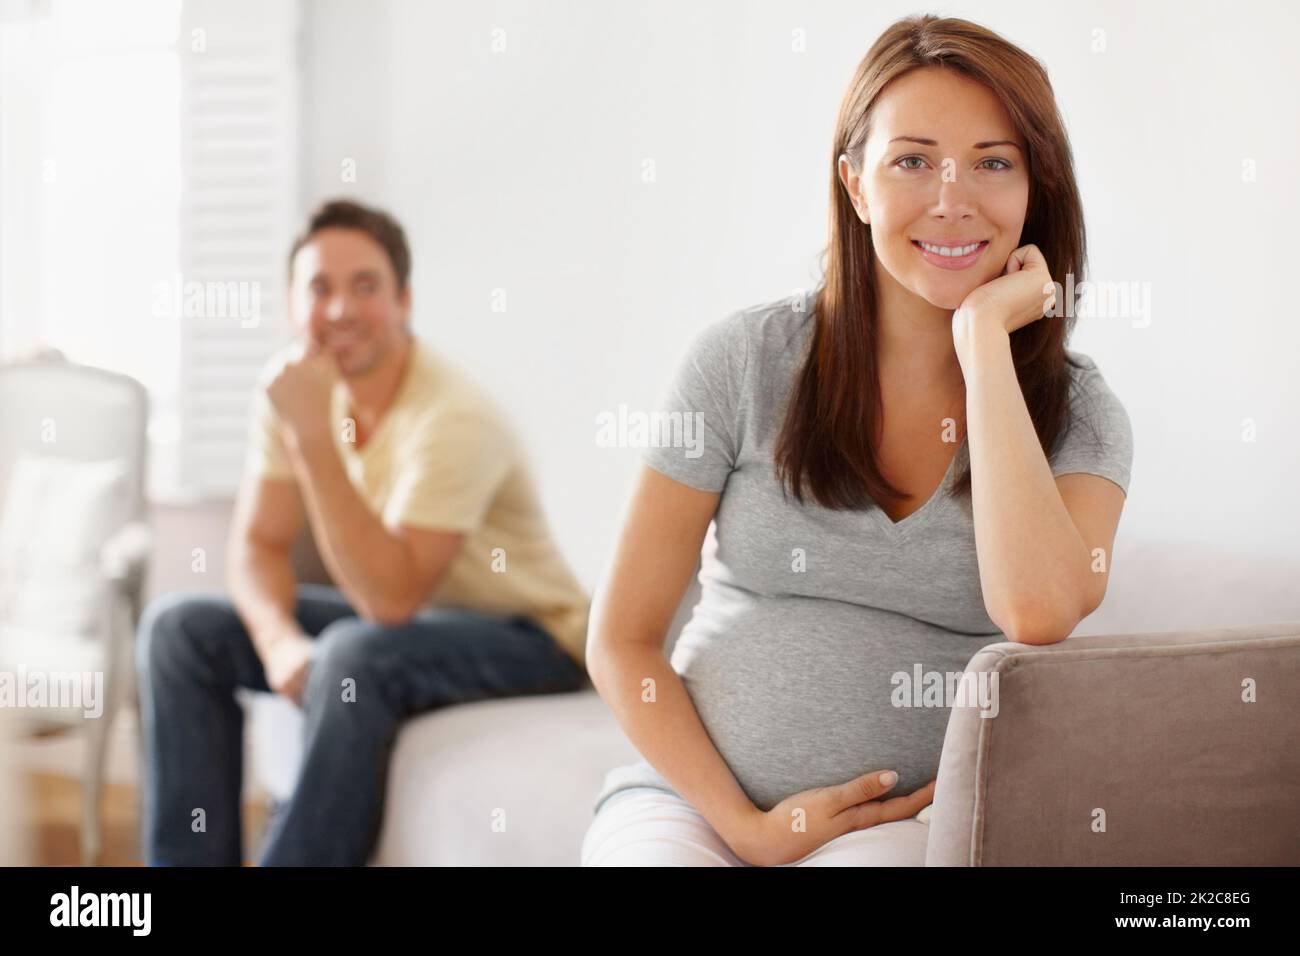 Sie will ein Mädchen und er will einen Jungen. Porträt einer hübschen jungen Schwangeren mit ihrem Ehepartner im Hintergrund. Stockfoto